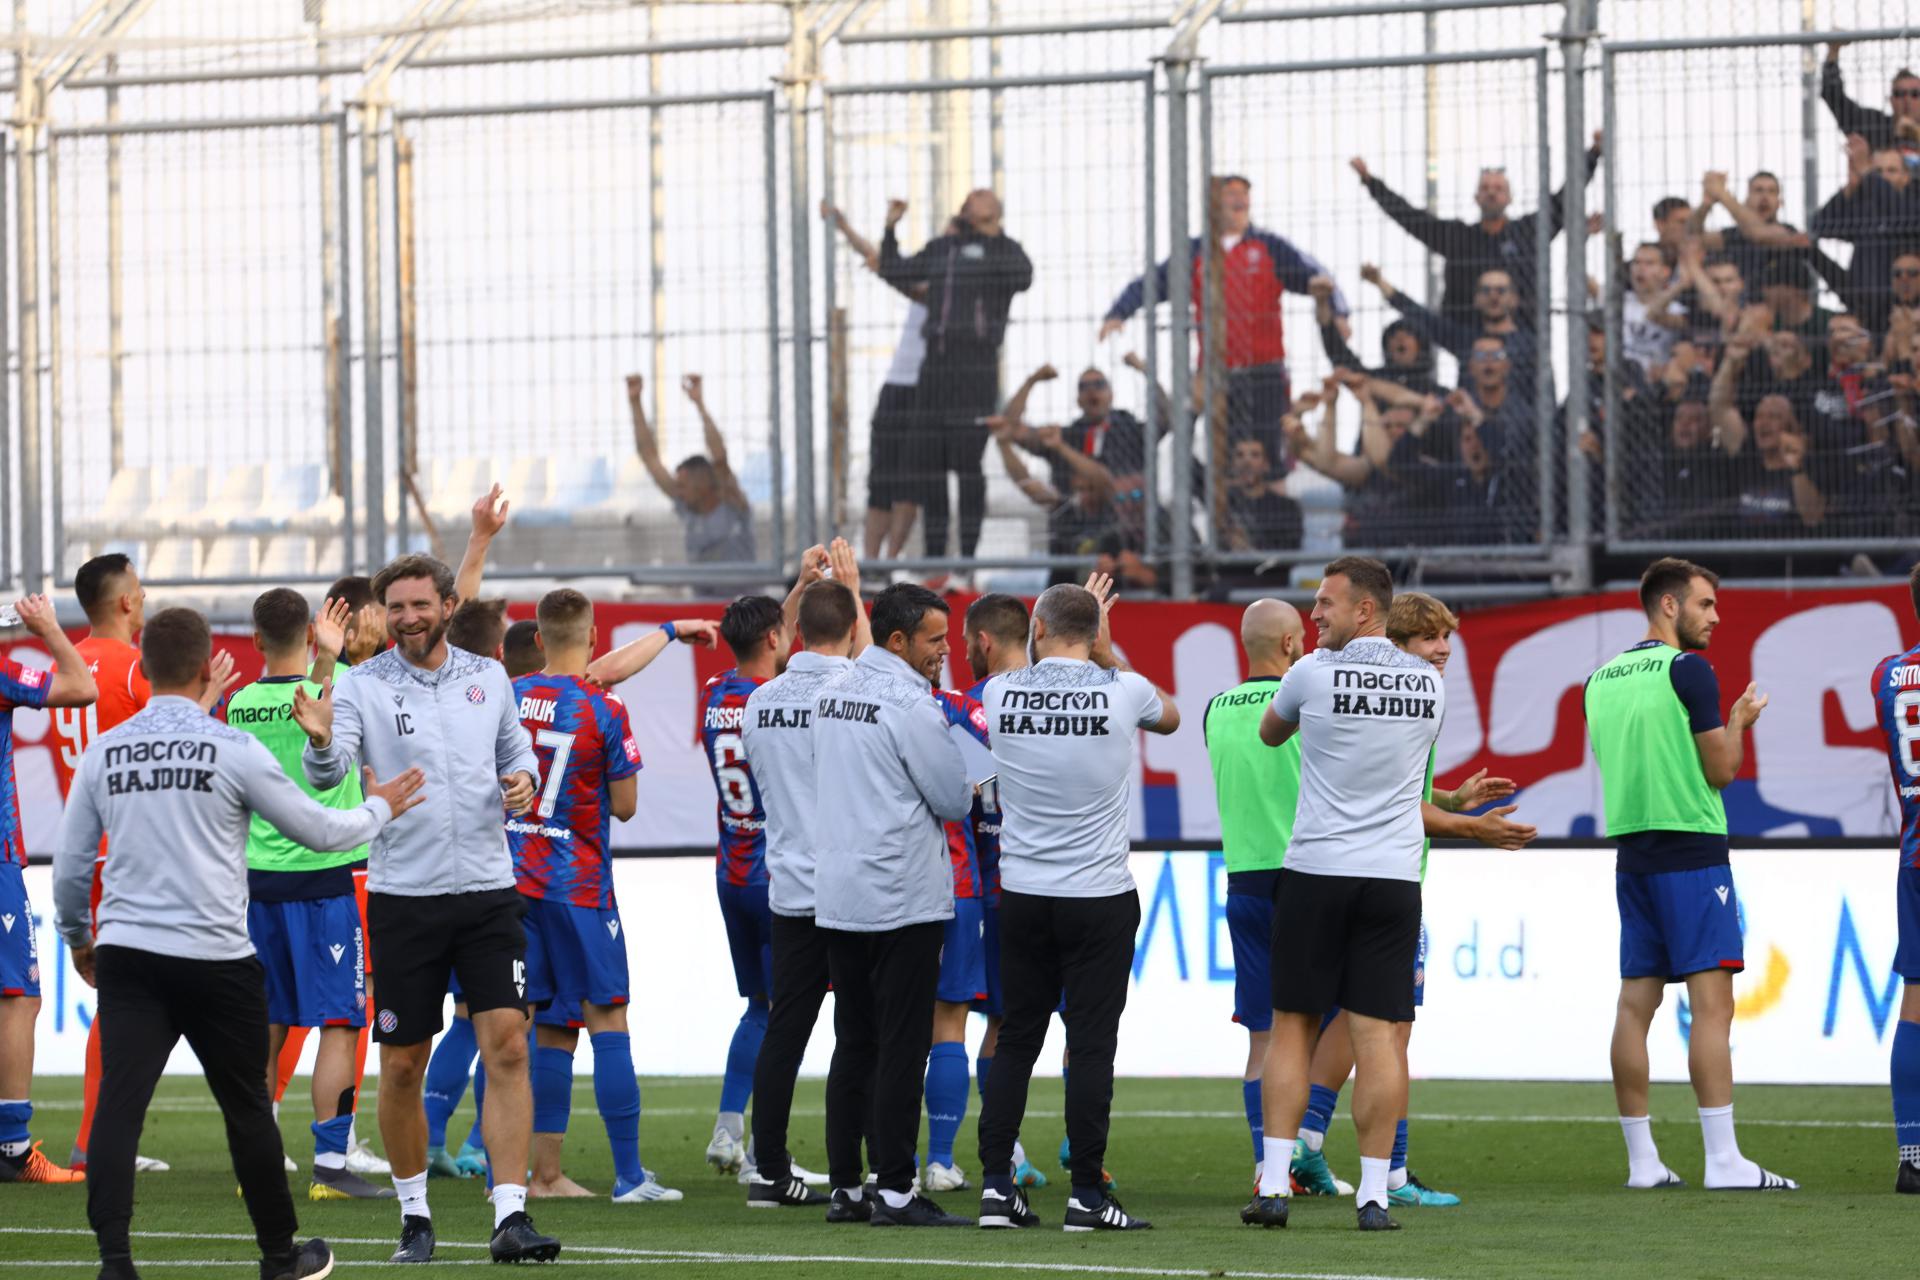 Slobodna Dalmacija - Pitali smo dvojicu navijača Hajduka što misle o porazu  od Rijeke: 'Pobijedili smo sami sebe, ali idemo dalje, ne odričemo se  titule